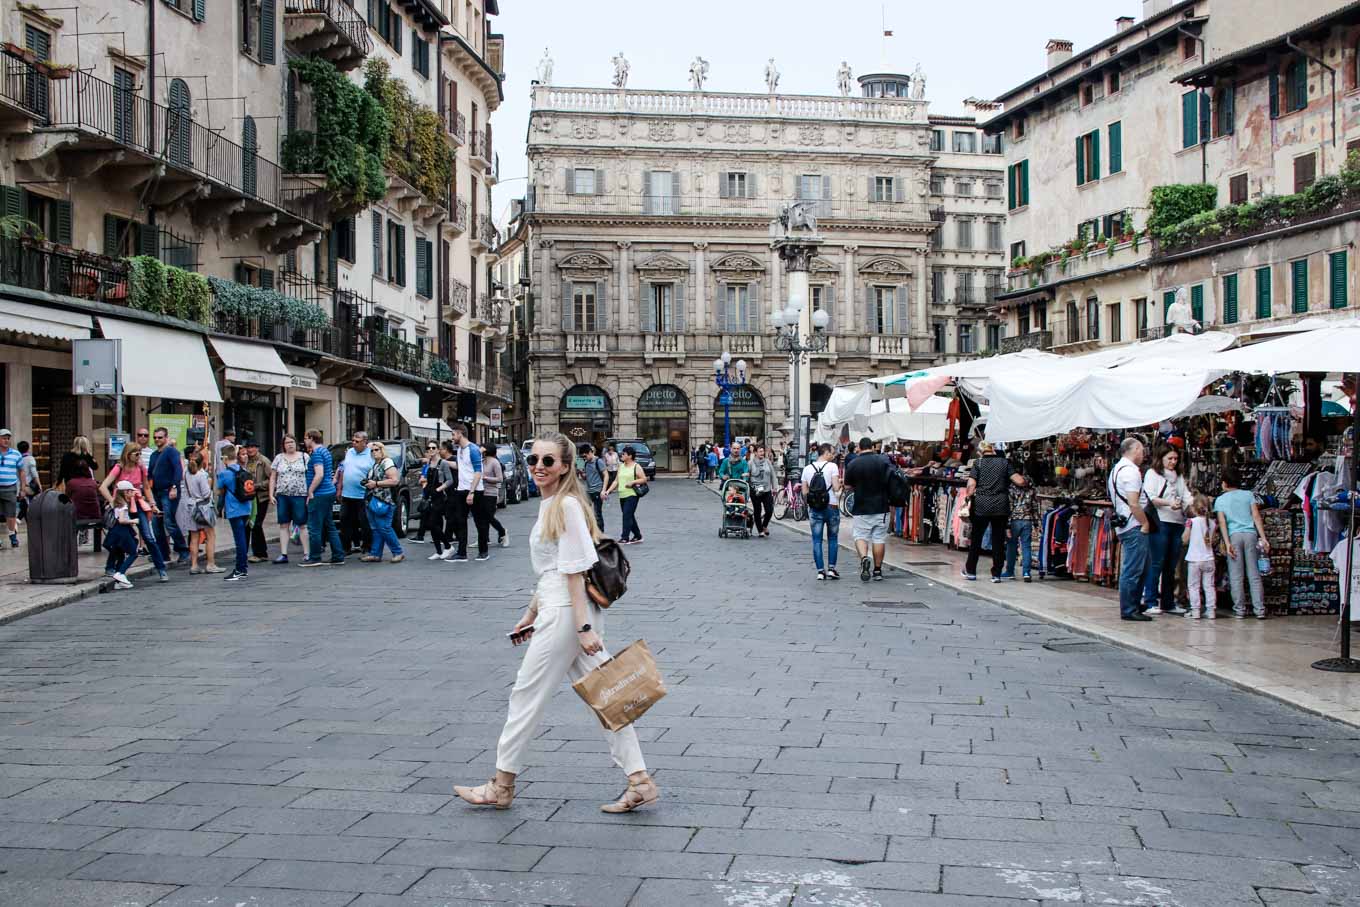 Verona-travel-guide-23timezones twentythreetimezones.com